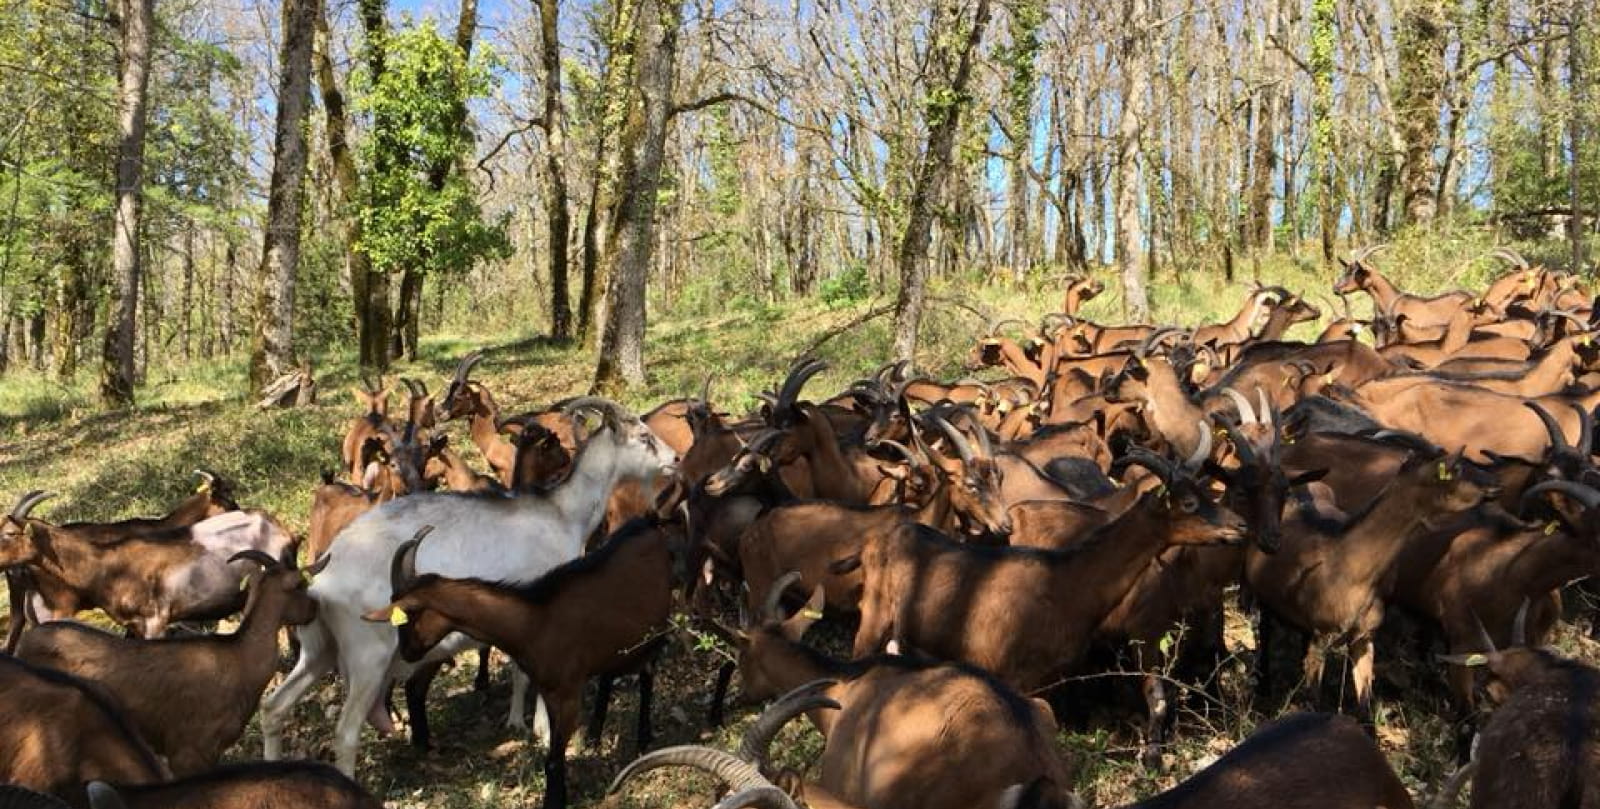 Létou goat farm in St Cirq Lapopie